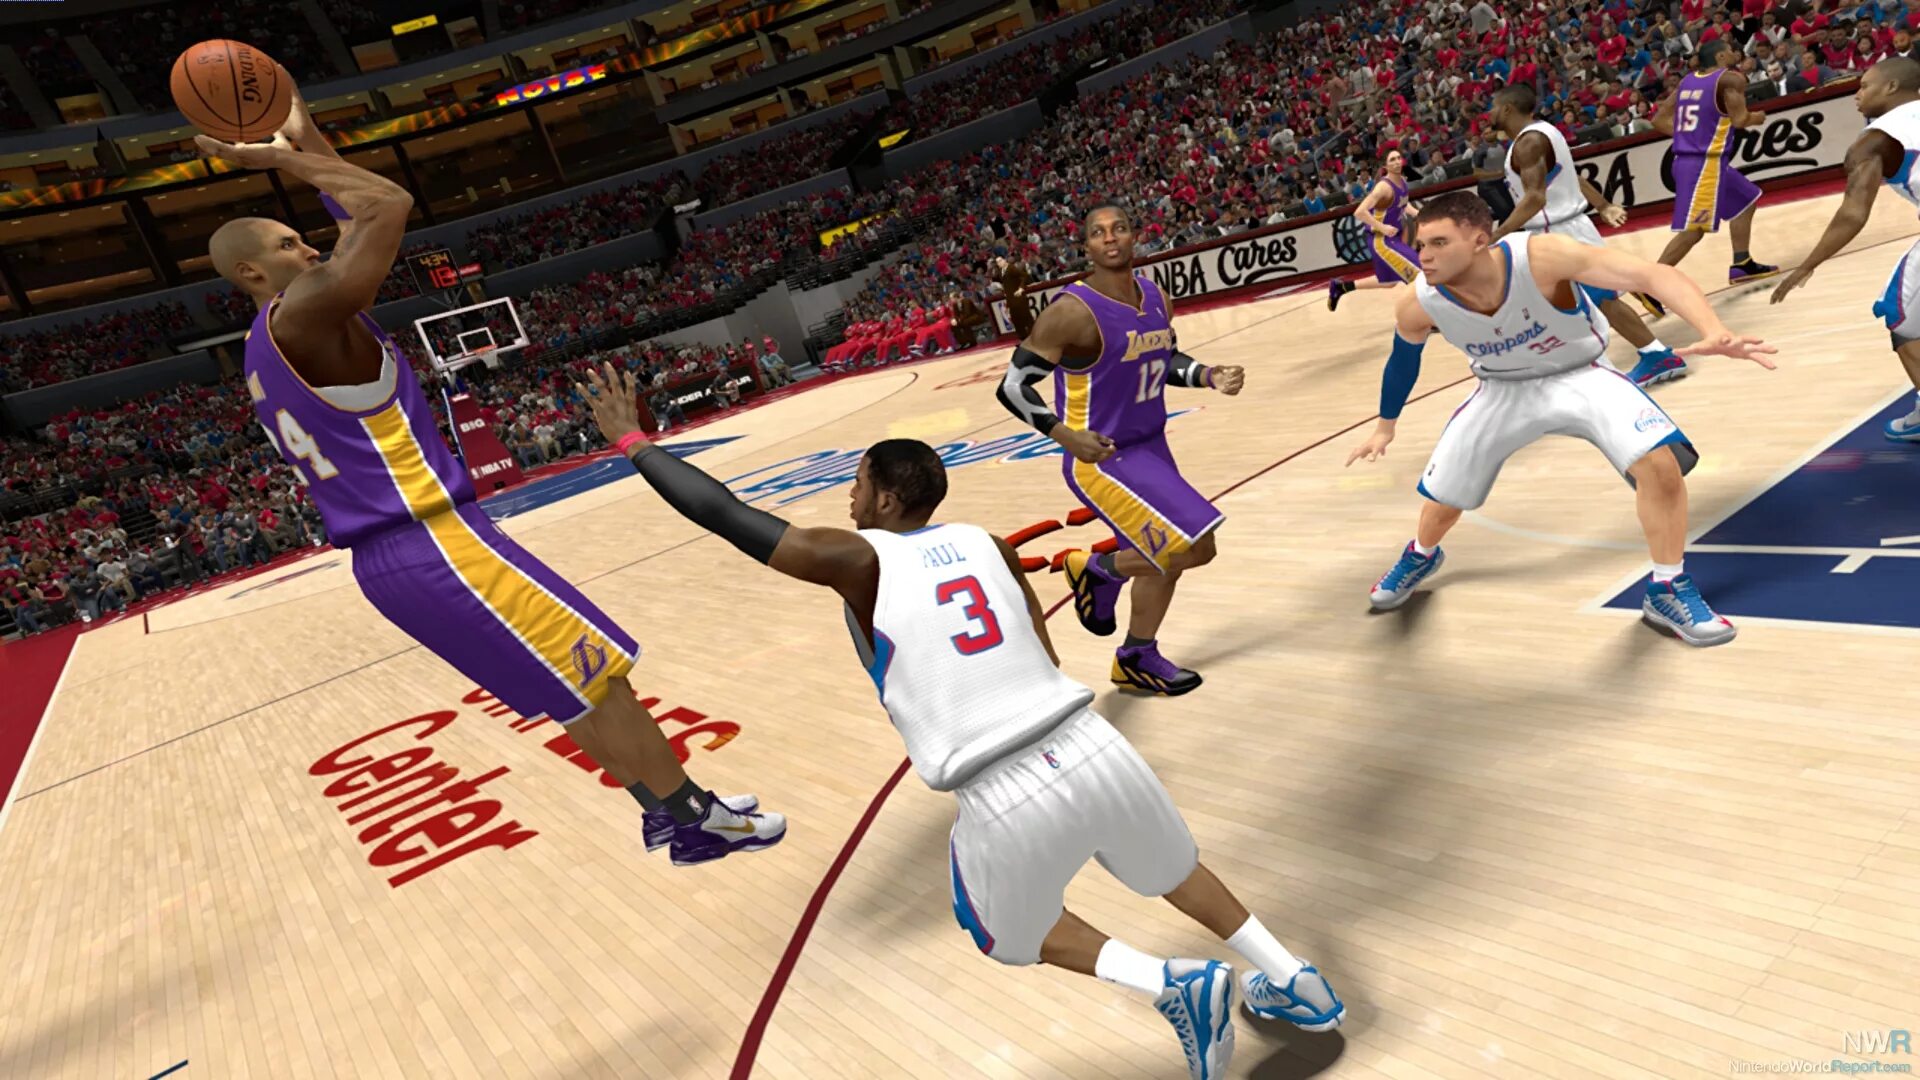 2 30 games. NBA 2k13. NBA 2k13 (PSP). NBA 2k игра. NBA 2k13 Wii u.